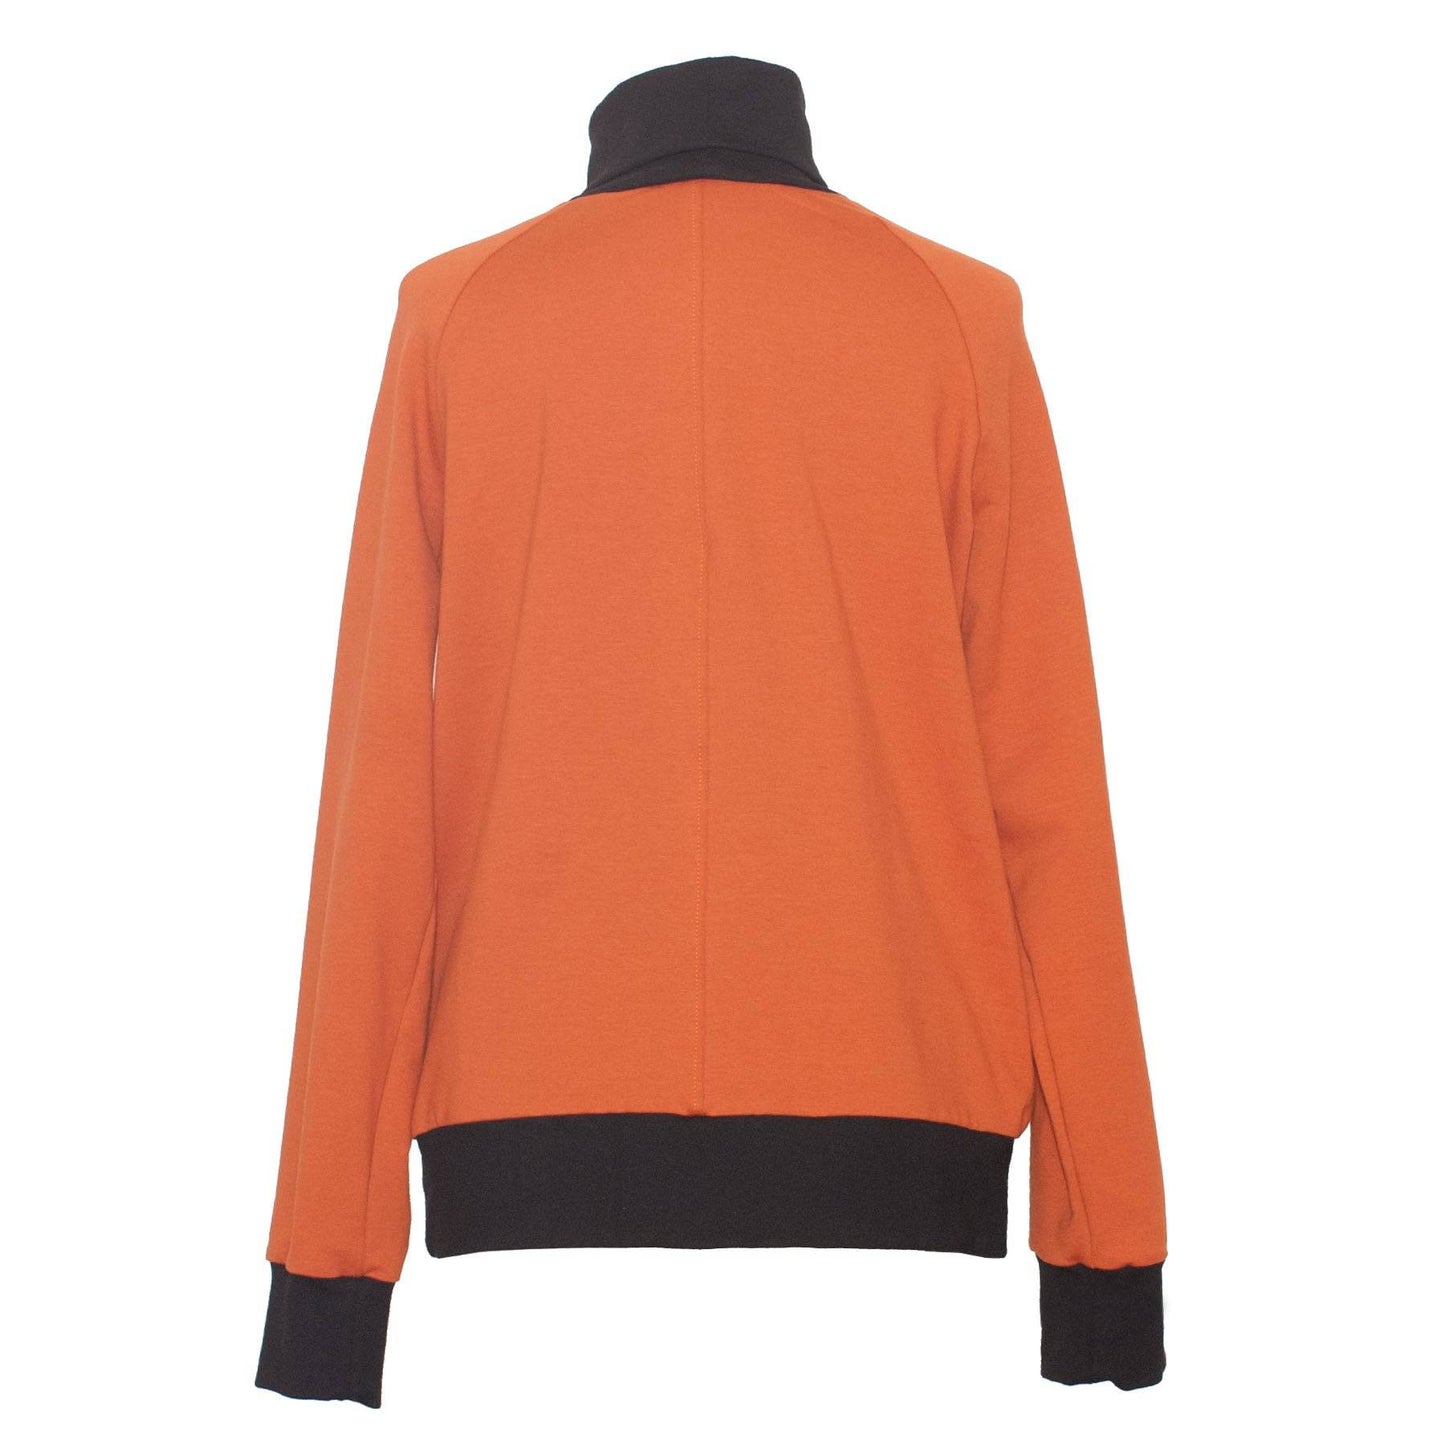 Rollkragensweater Try aus Bio-Baumwolle - orange - KOLO Berlin